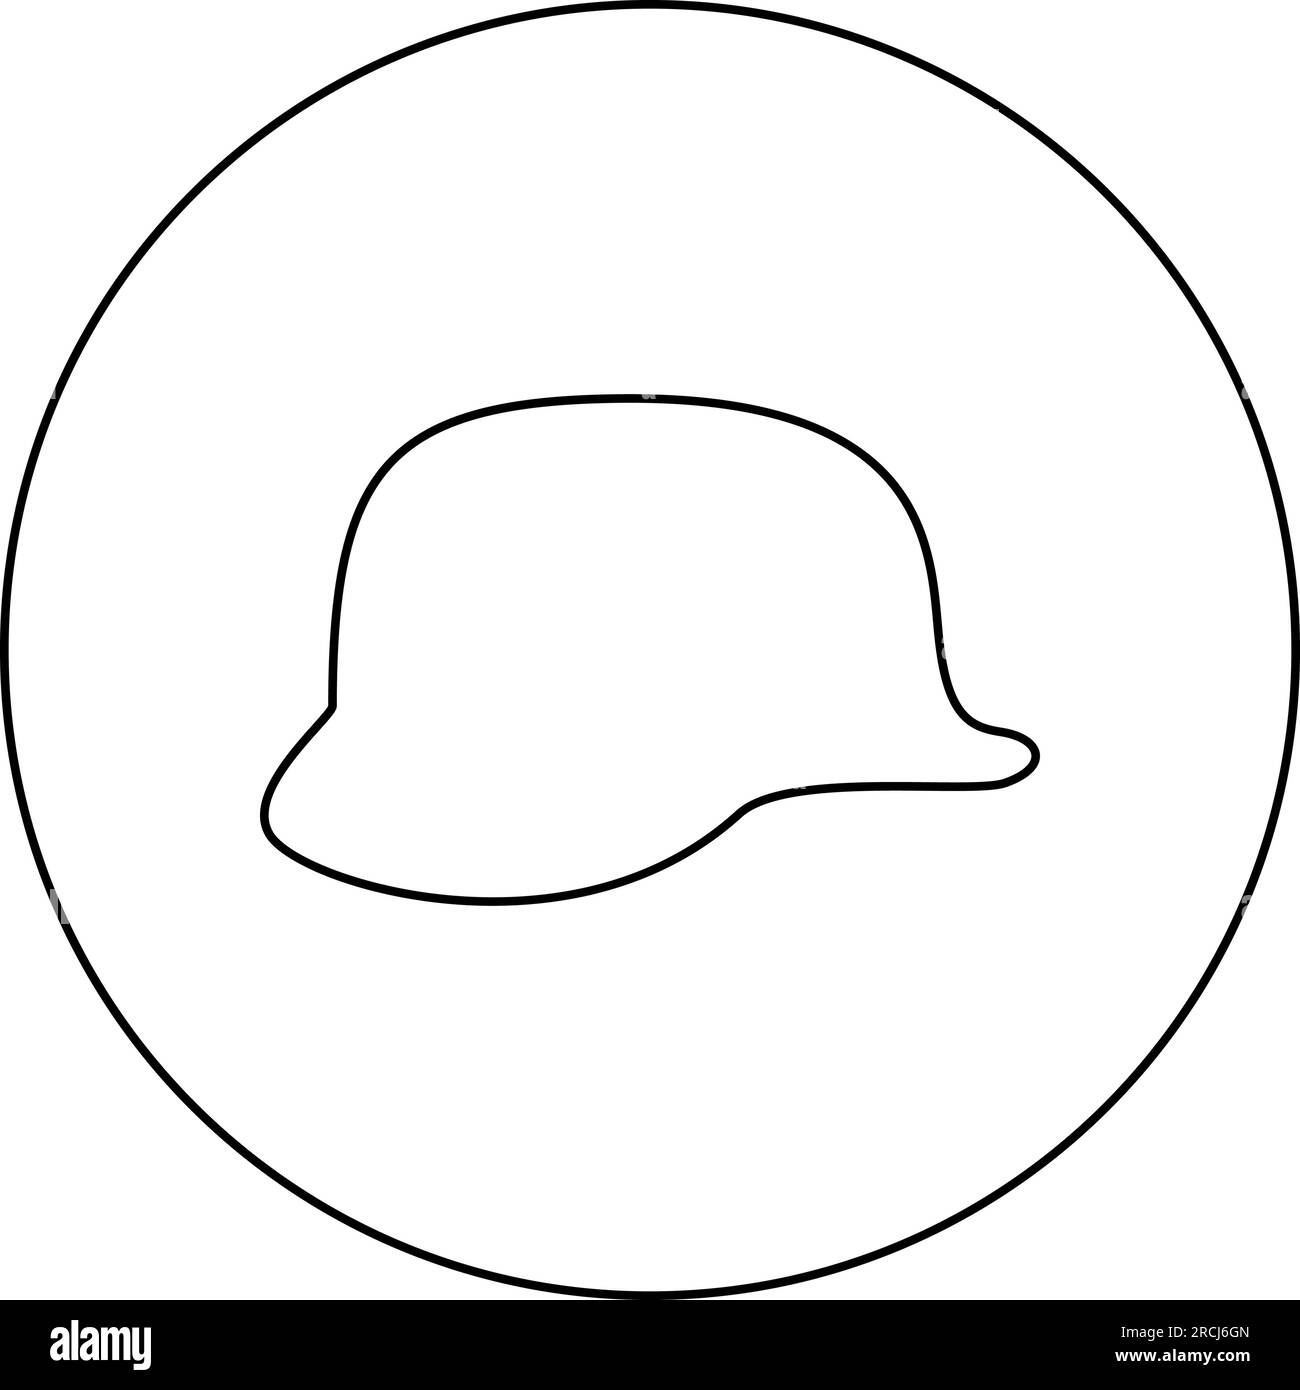 Deutscher Helm aus dem Zweiten Weltkrieg 2 stahlhelm WW2 Symbol im Kreis rund schwarz Vektor Abbildung Konturlinie Umriss dünner Stil einfach Stock Vektor